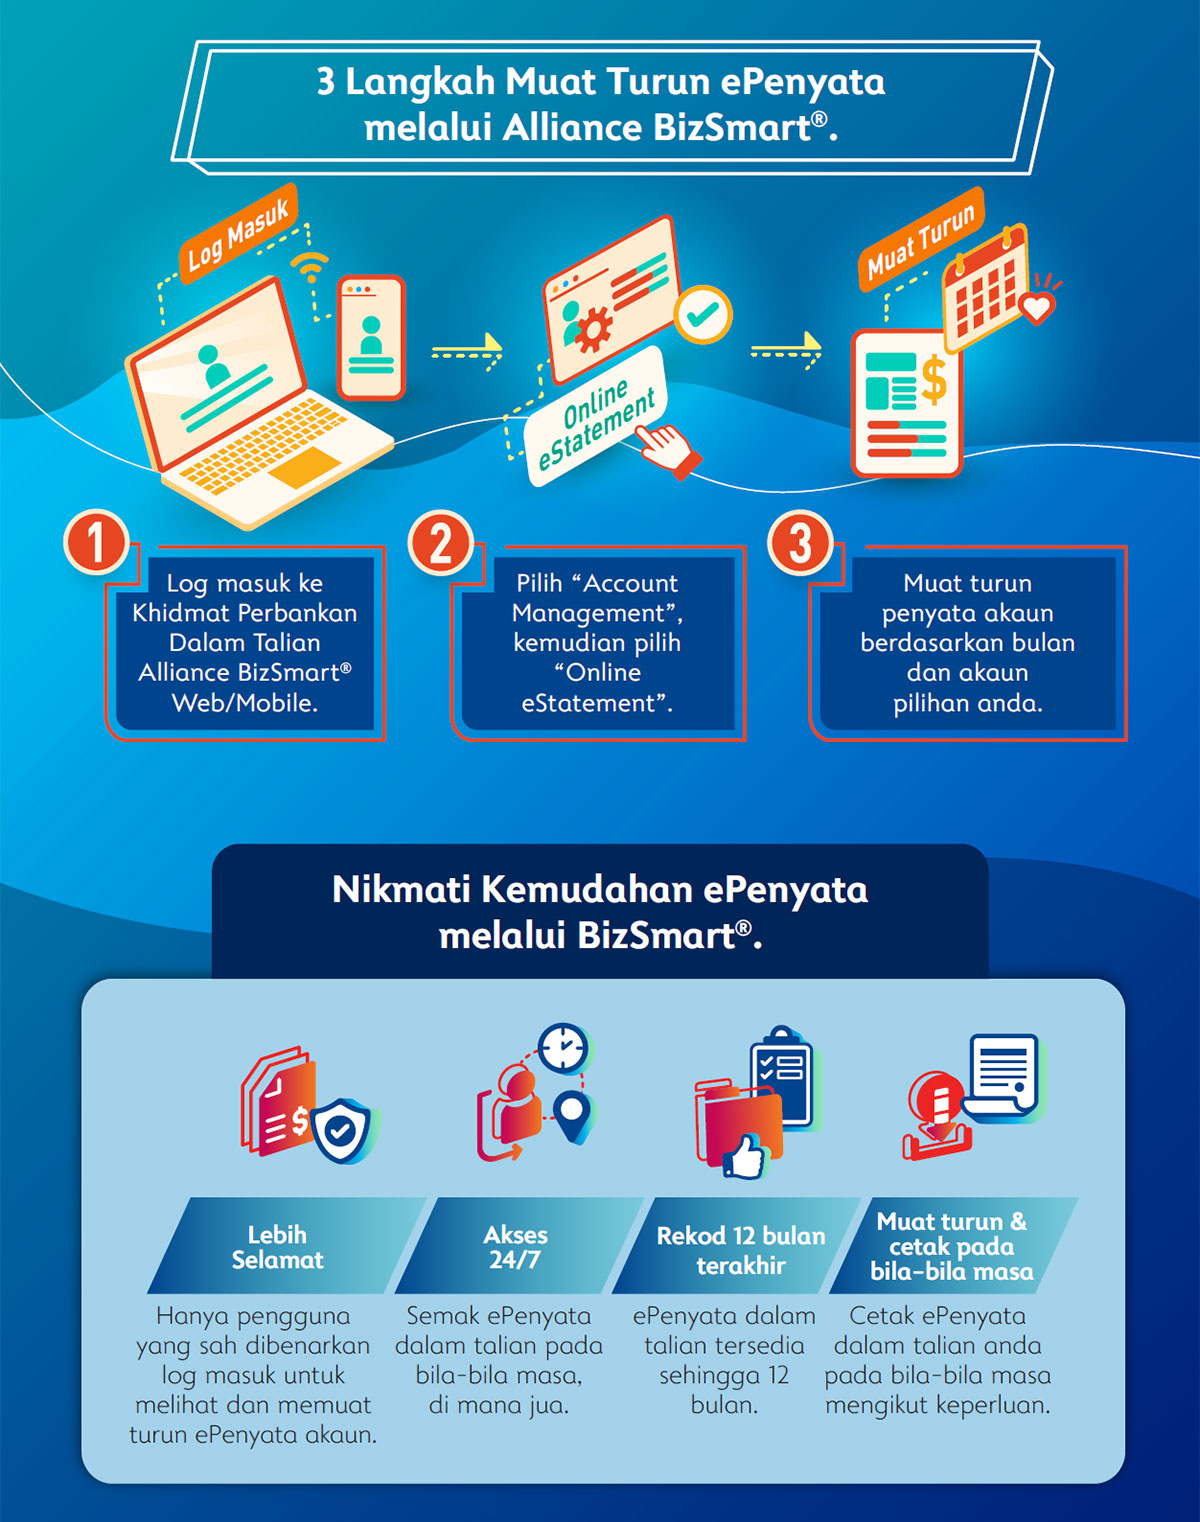 3 Steps to Download Your Online eStatement via Alliance BizSmart